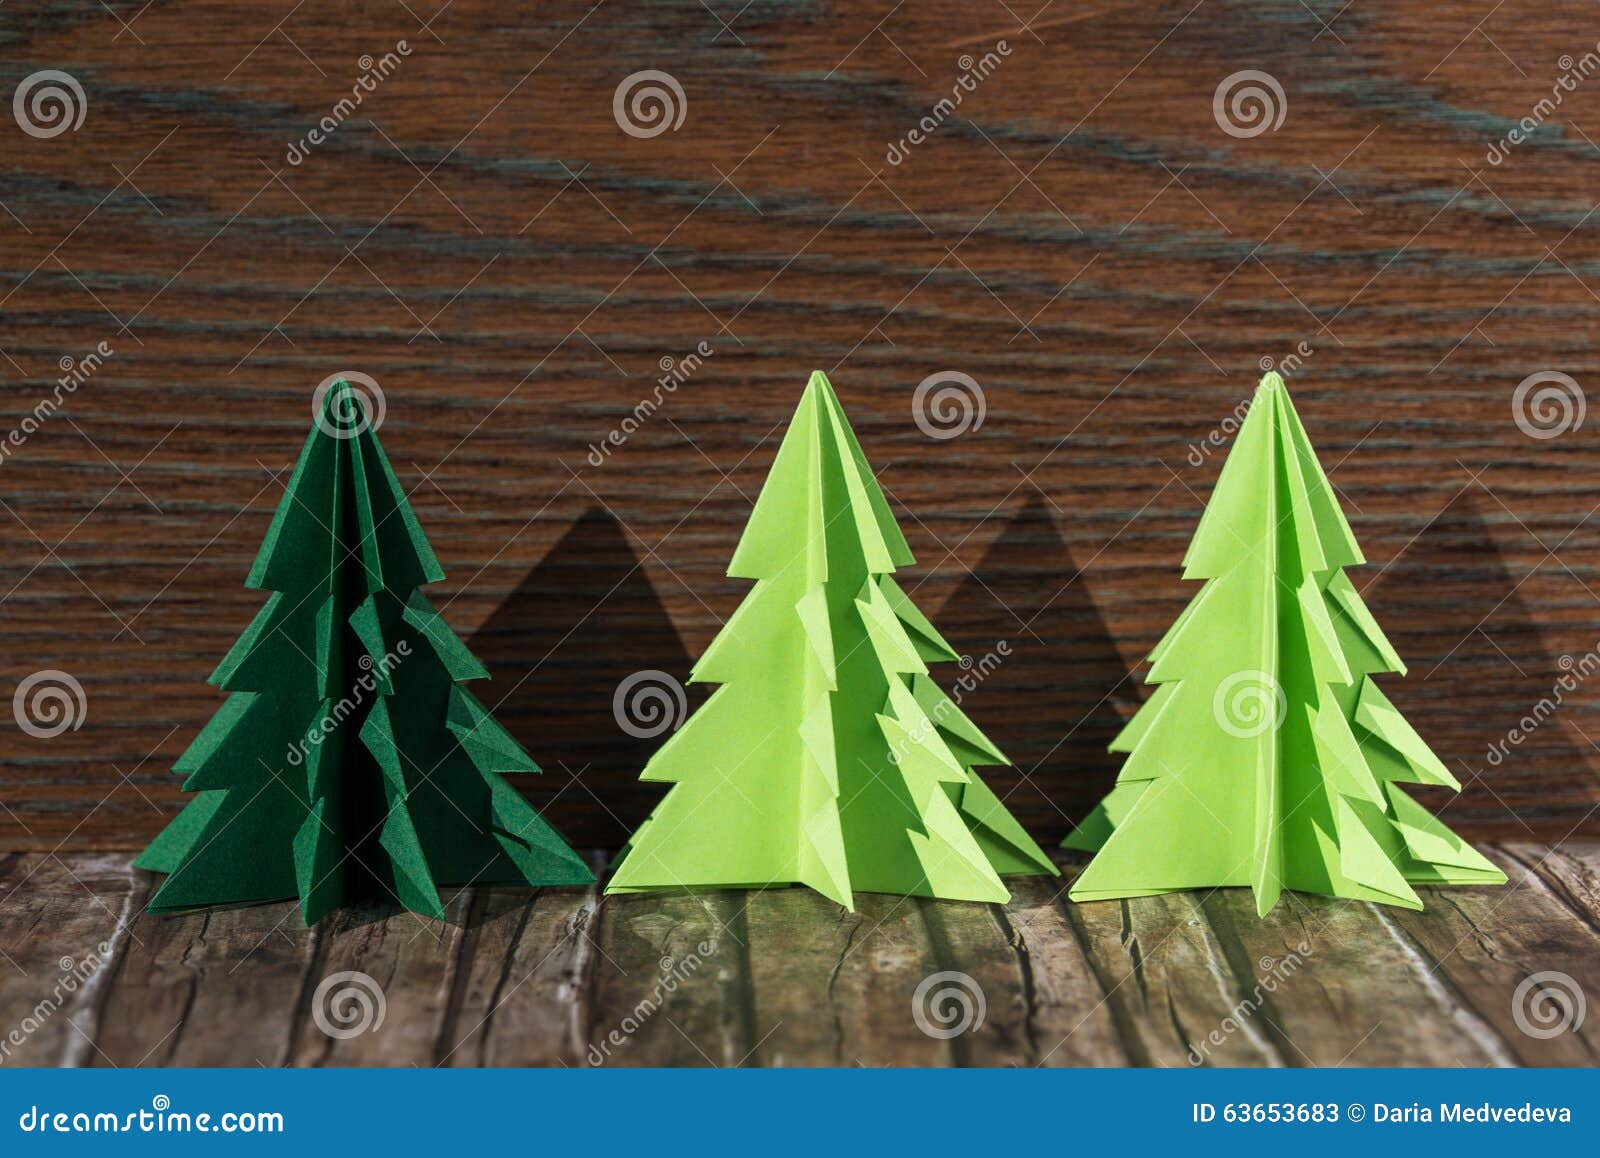 Albero Di Natale Di Carta Origami.Tre Alberi Di Natale Di Carta Di Origami Su Un Fondo Di Legno Immagine Stock Immagine Di Oggetto Albero 63653683